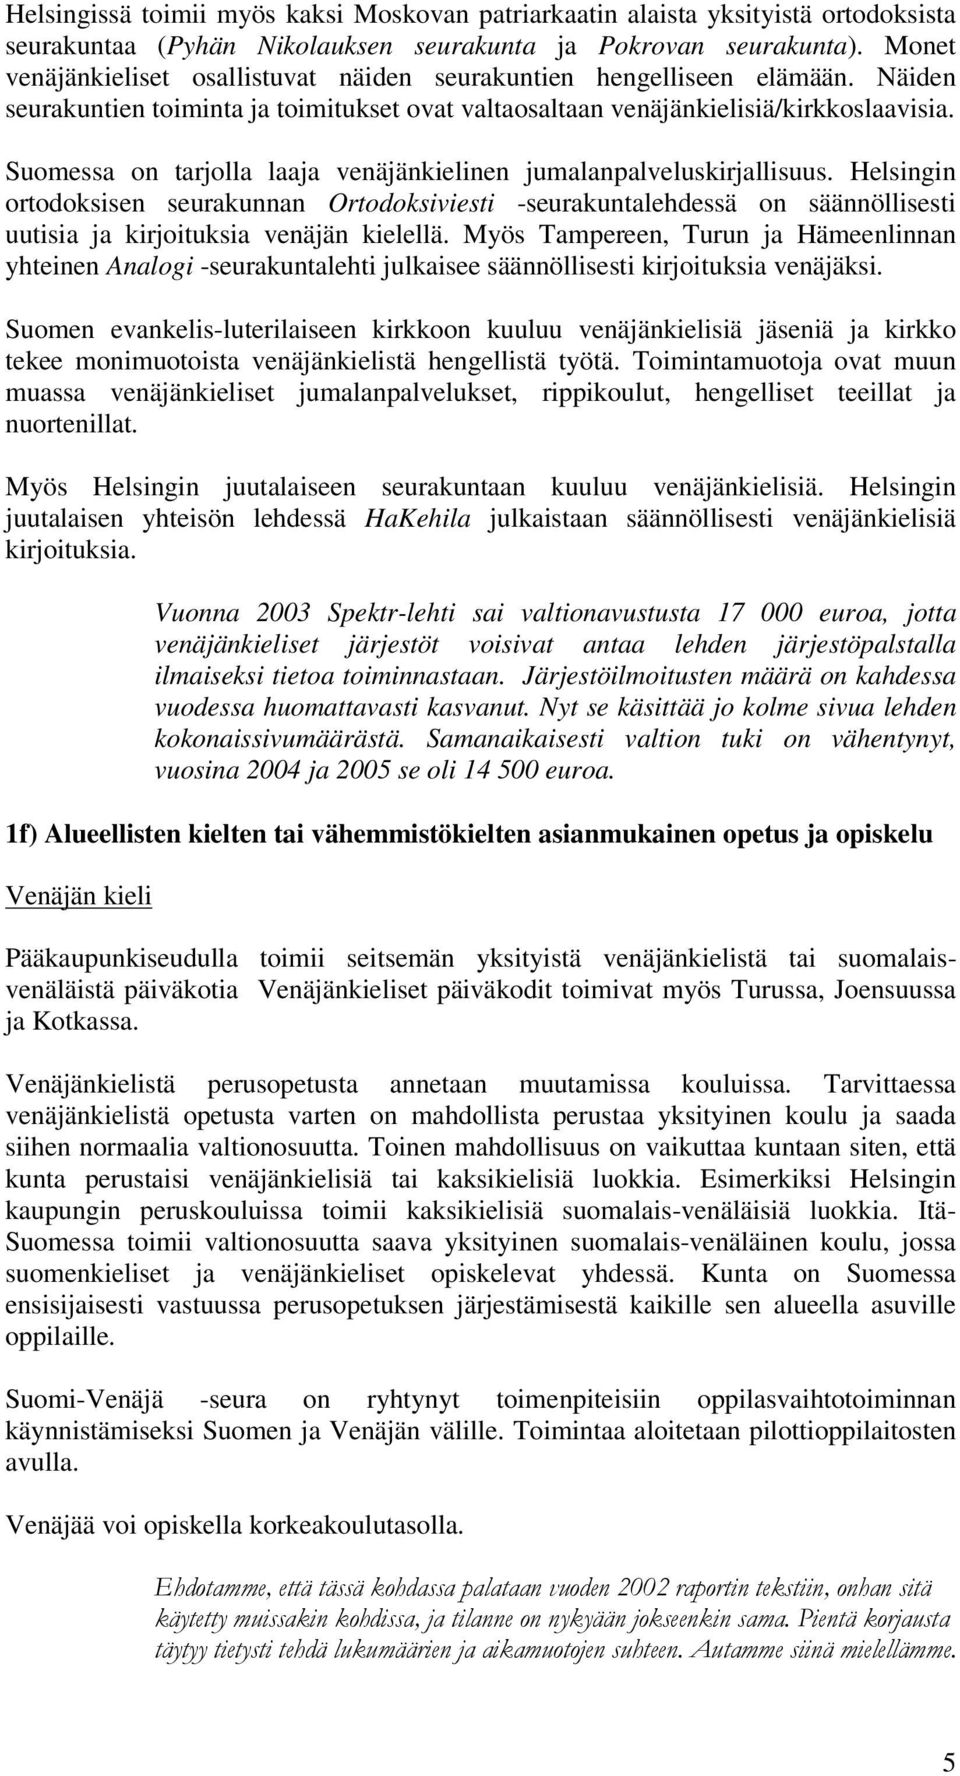 Suomessa on tarjolla laaja venäjänkielinen jumalanpalveluskirjallisuus.